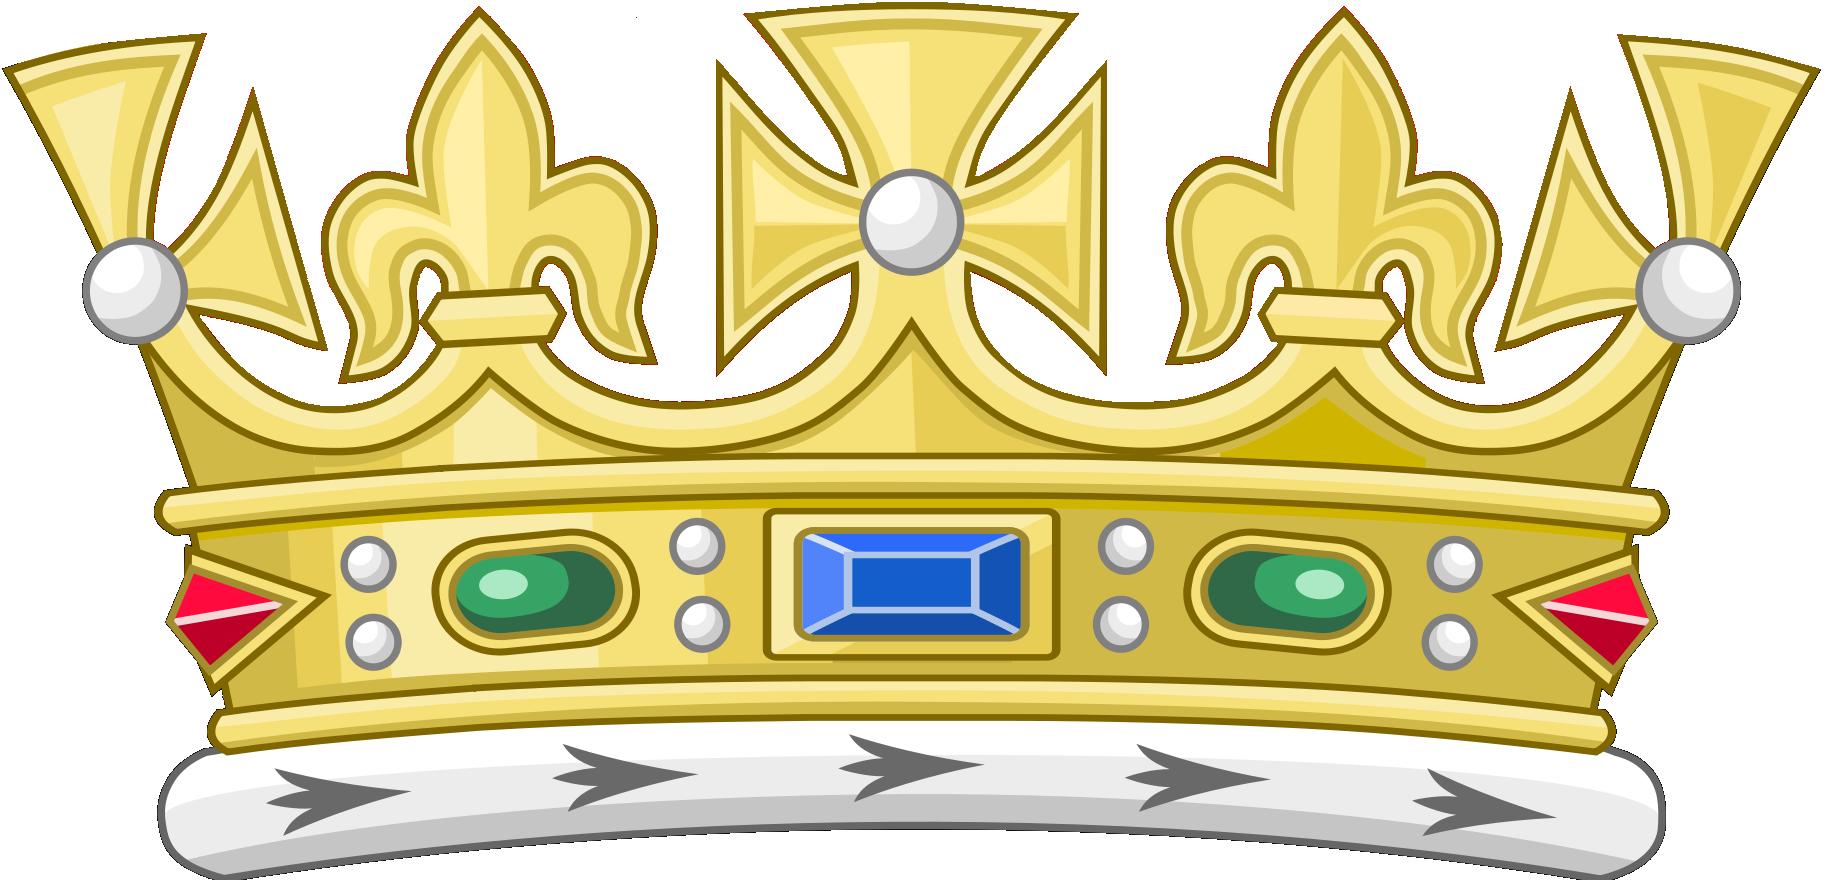 file-open-st-edward-s-crown-jpg-wikipedia-the-free-encyclopedia